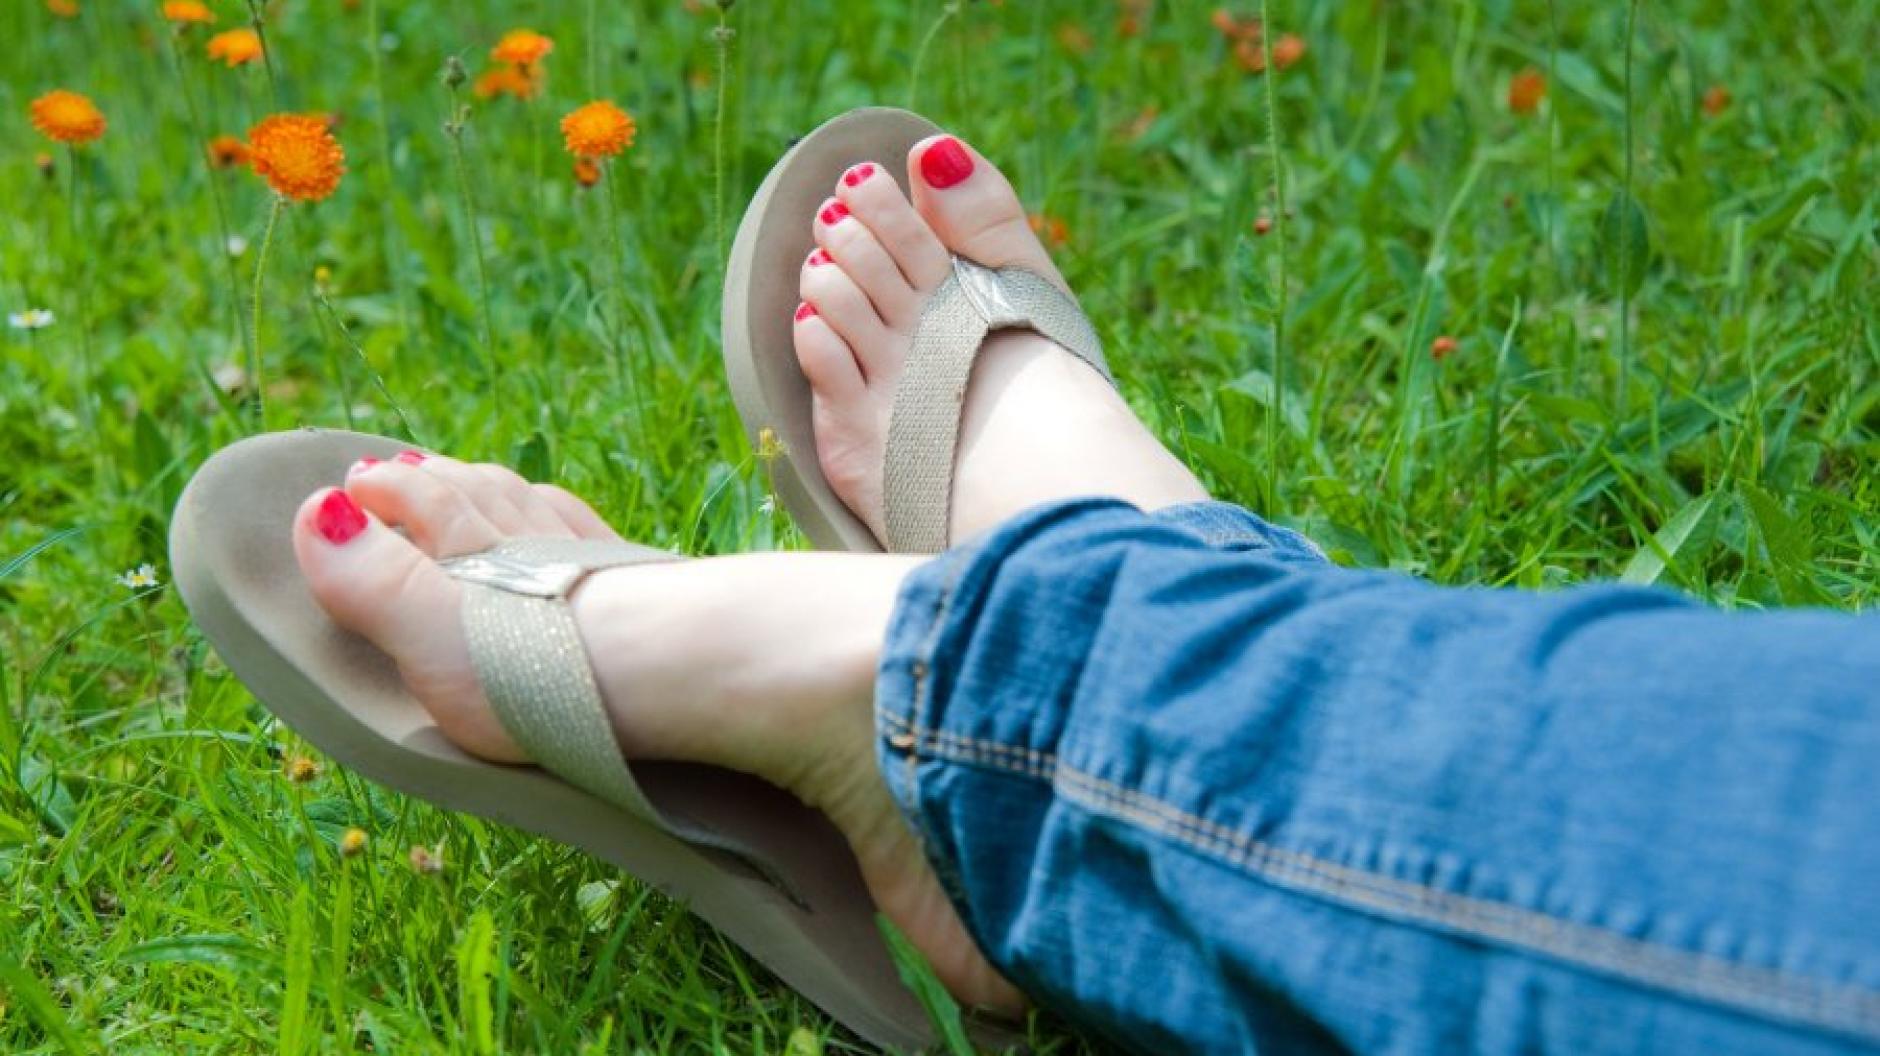 Pflege Tipps Für Schöne Füße Im Sommer